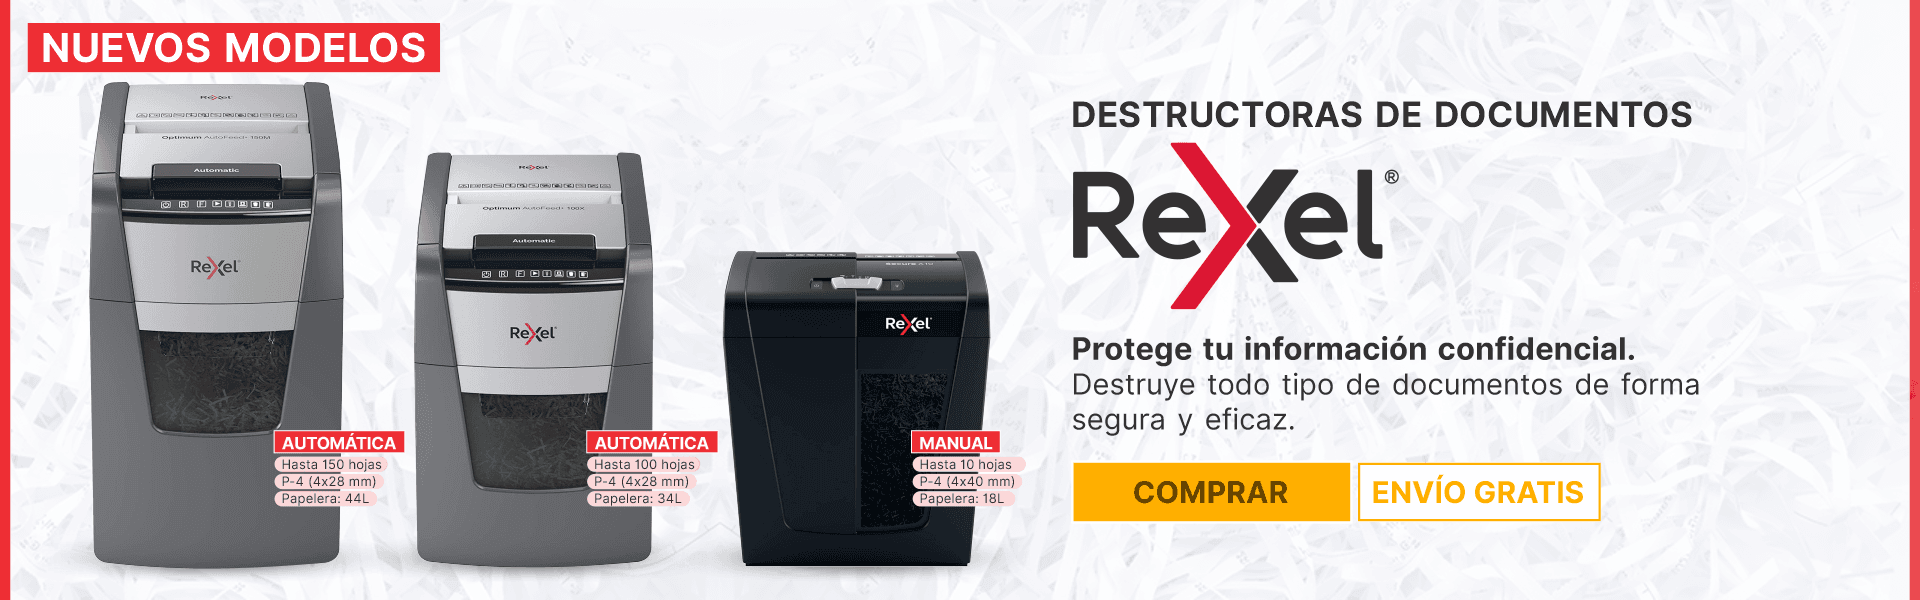 Destructoras Rexel _ 2022-03-29